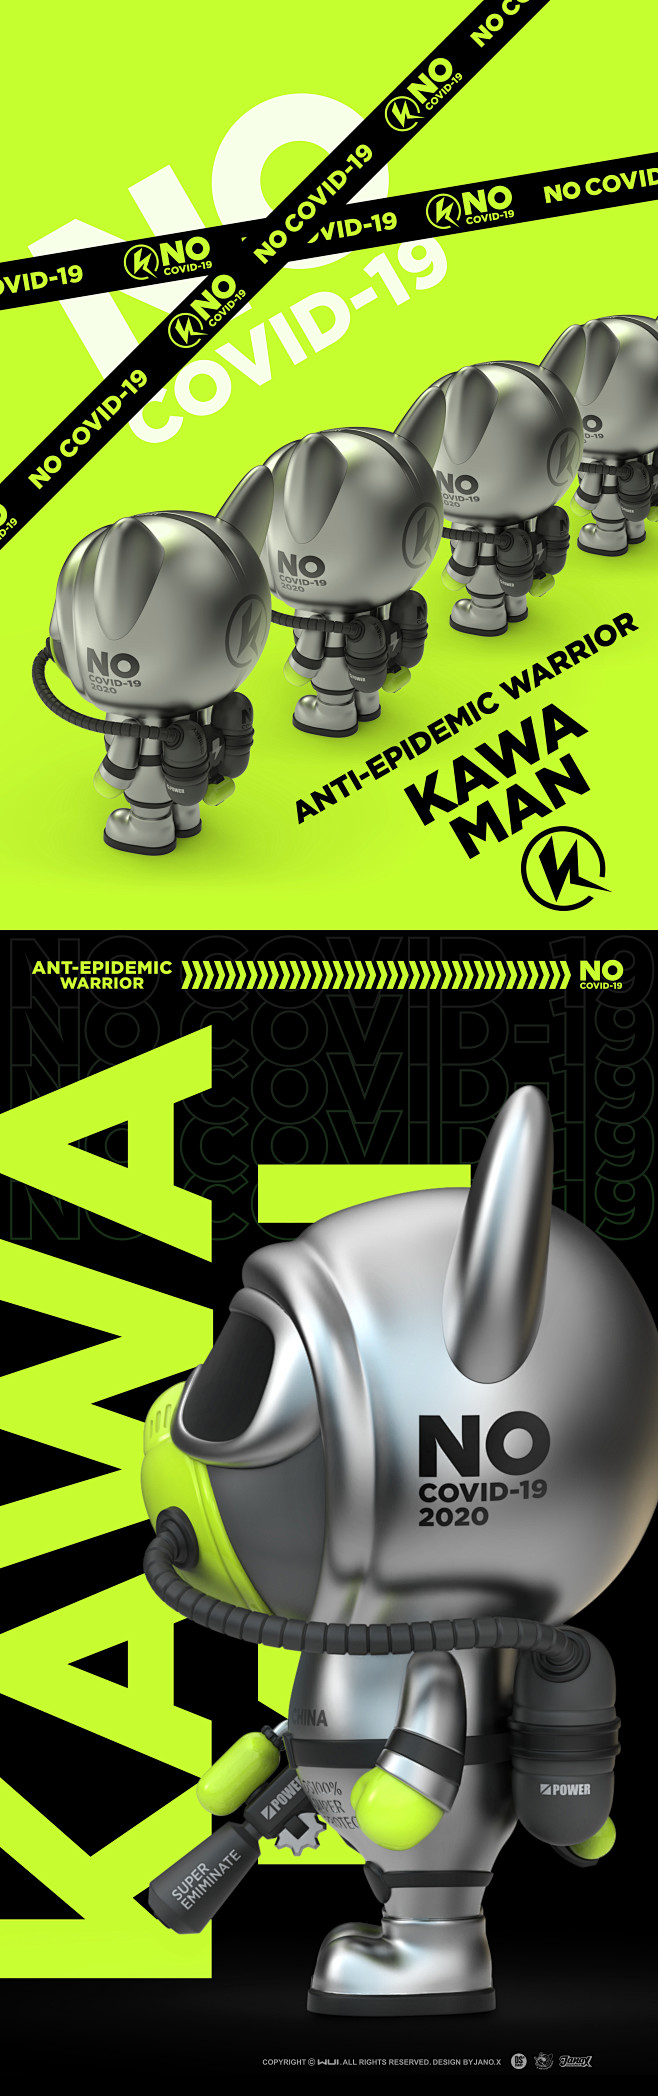 DS-Kawa man抗疫战士-金属版 ...